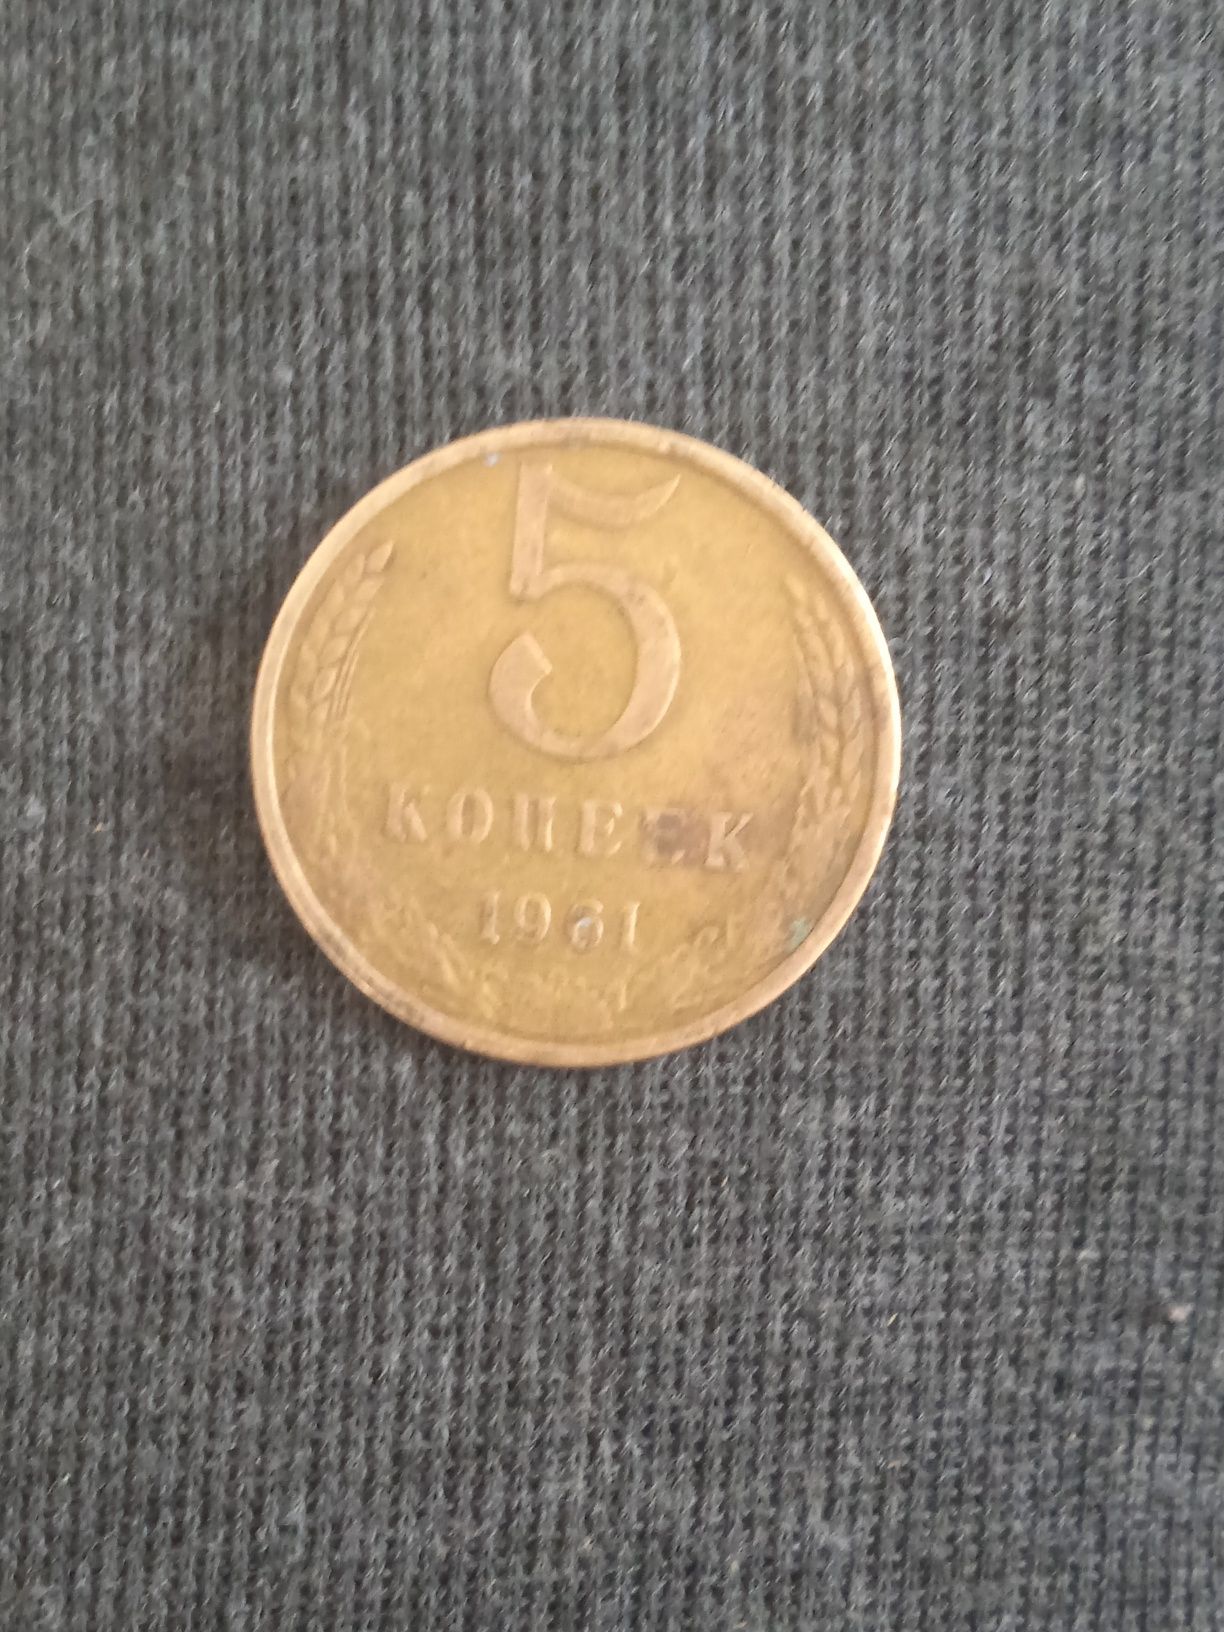 Це монета ессср 5 копійок 1961 року